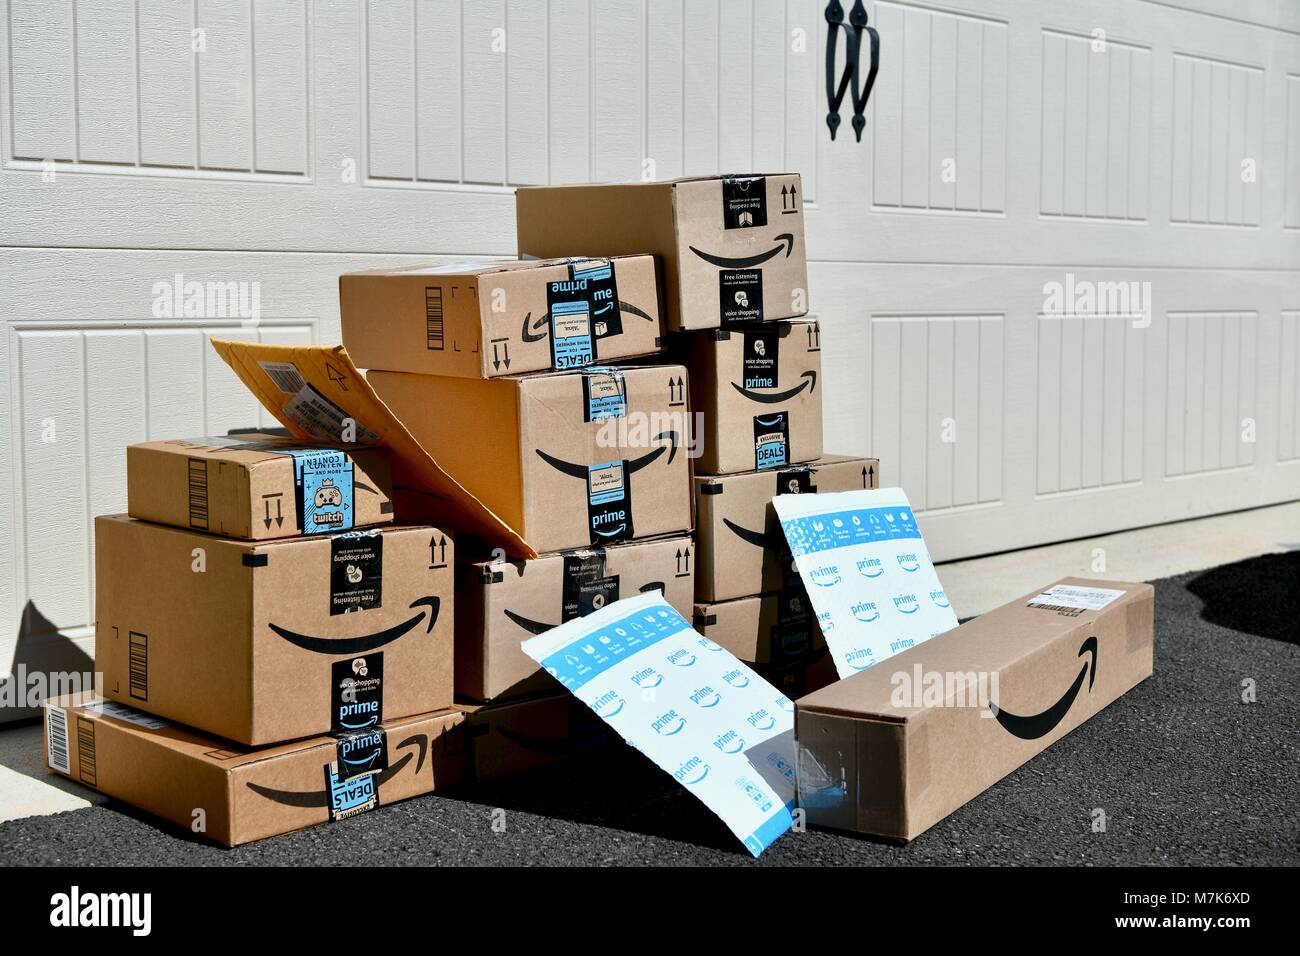 Amazon prime boxes immagini e fotografie stock ad alta risoluzione - Alamy